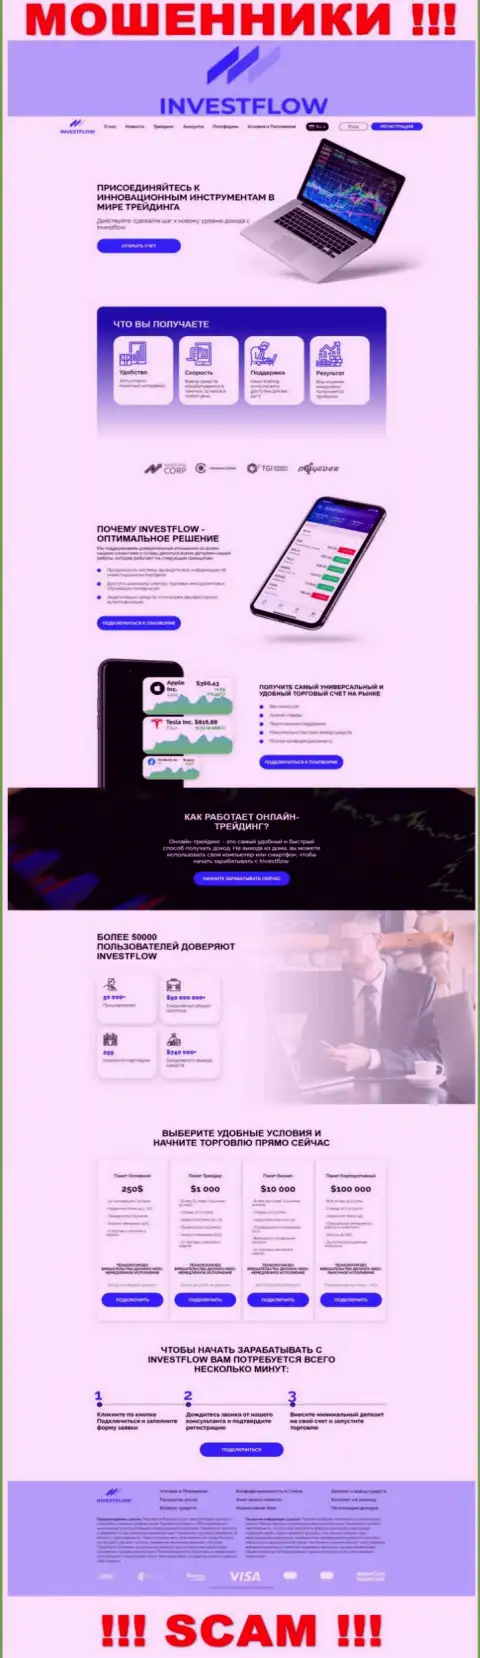 Скрин официального сайта Инвест-Флов Ио - Invest-Flow Io